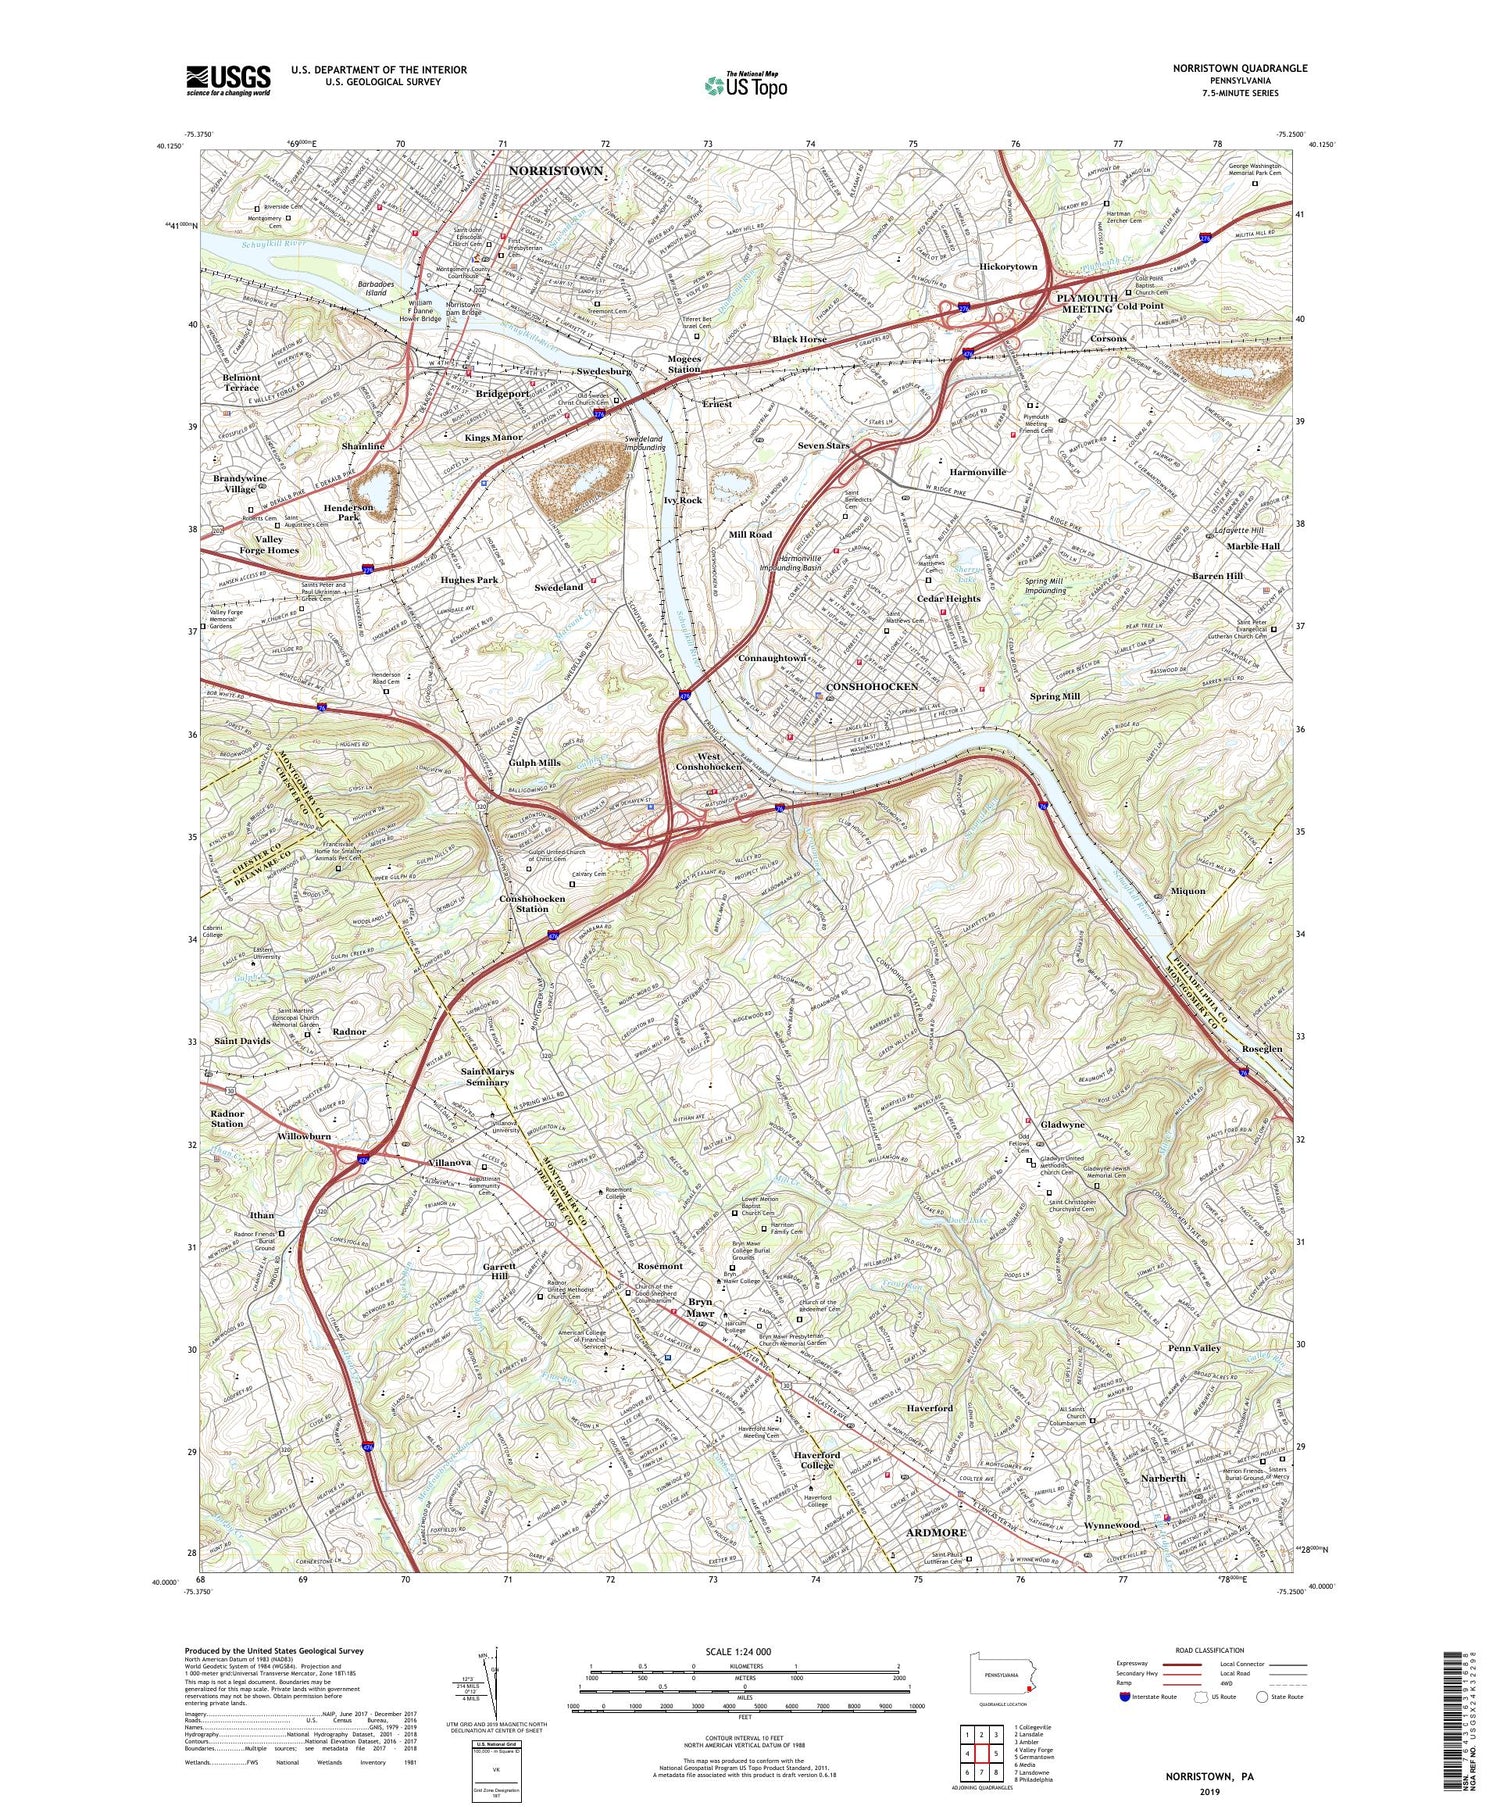 Norristown Pennsylvania US Topo Map Image